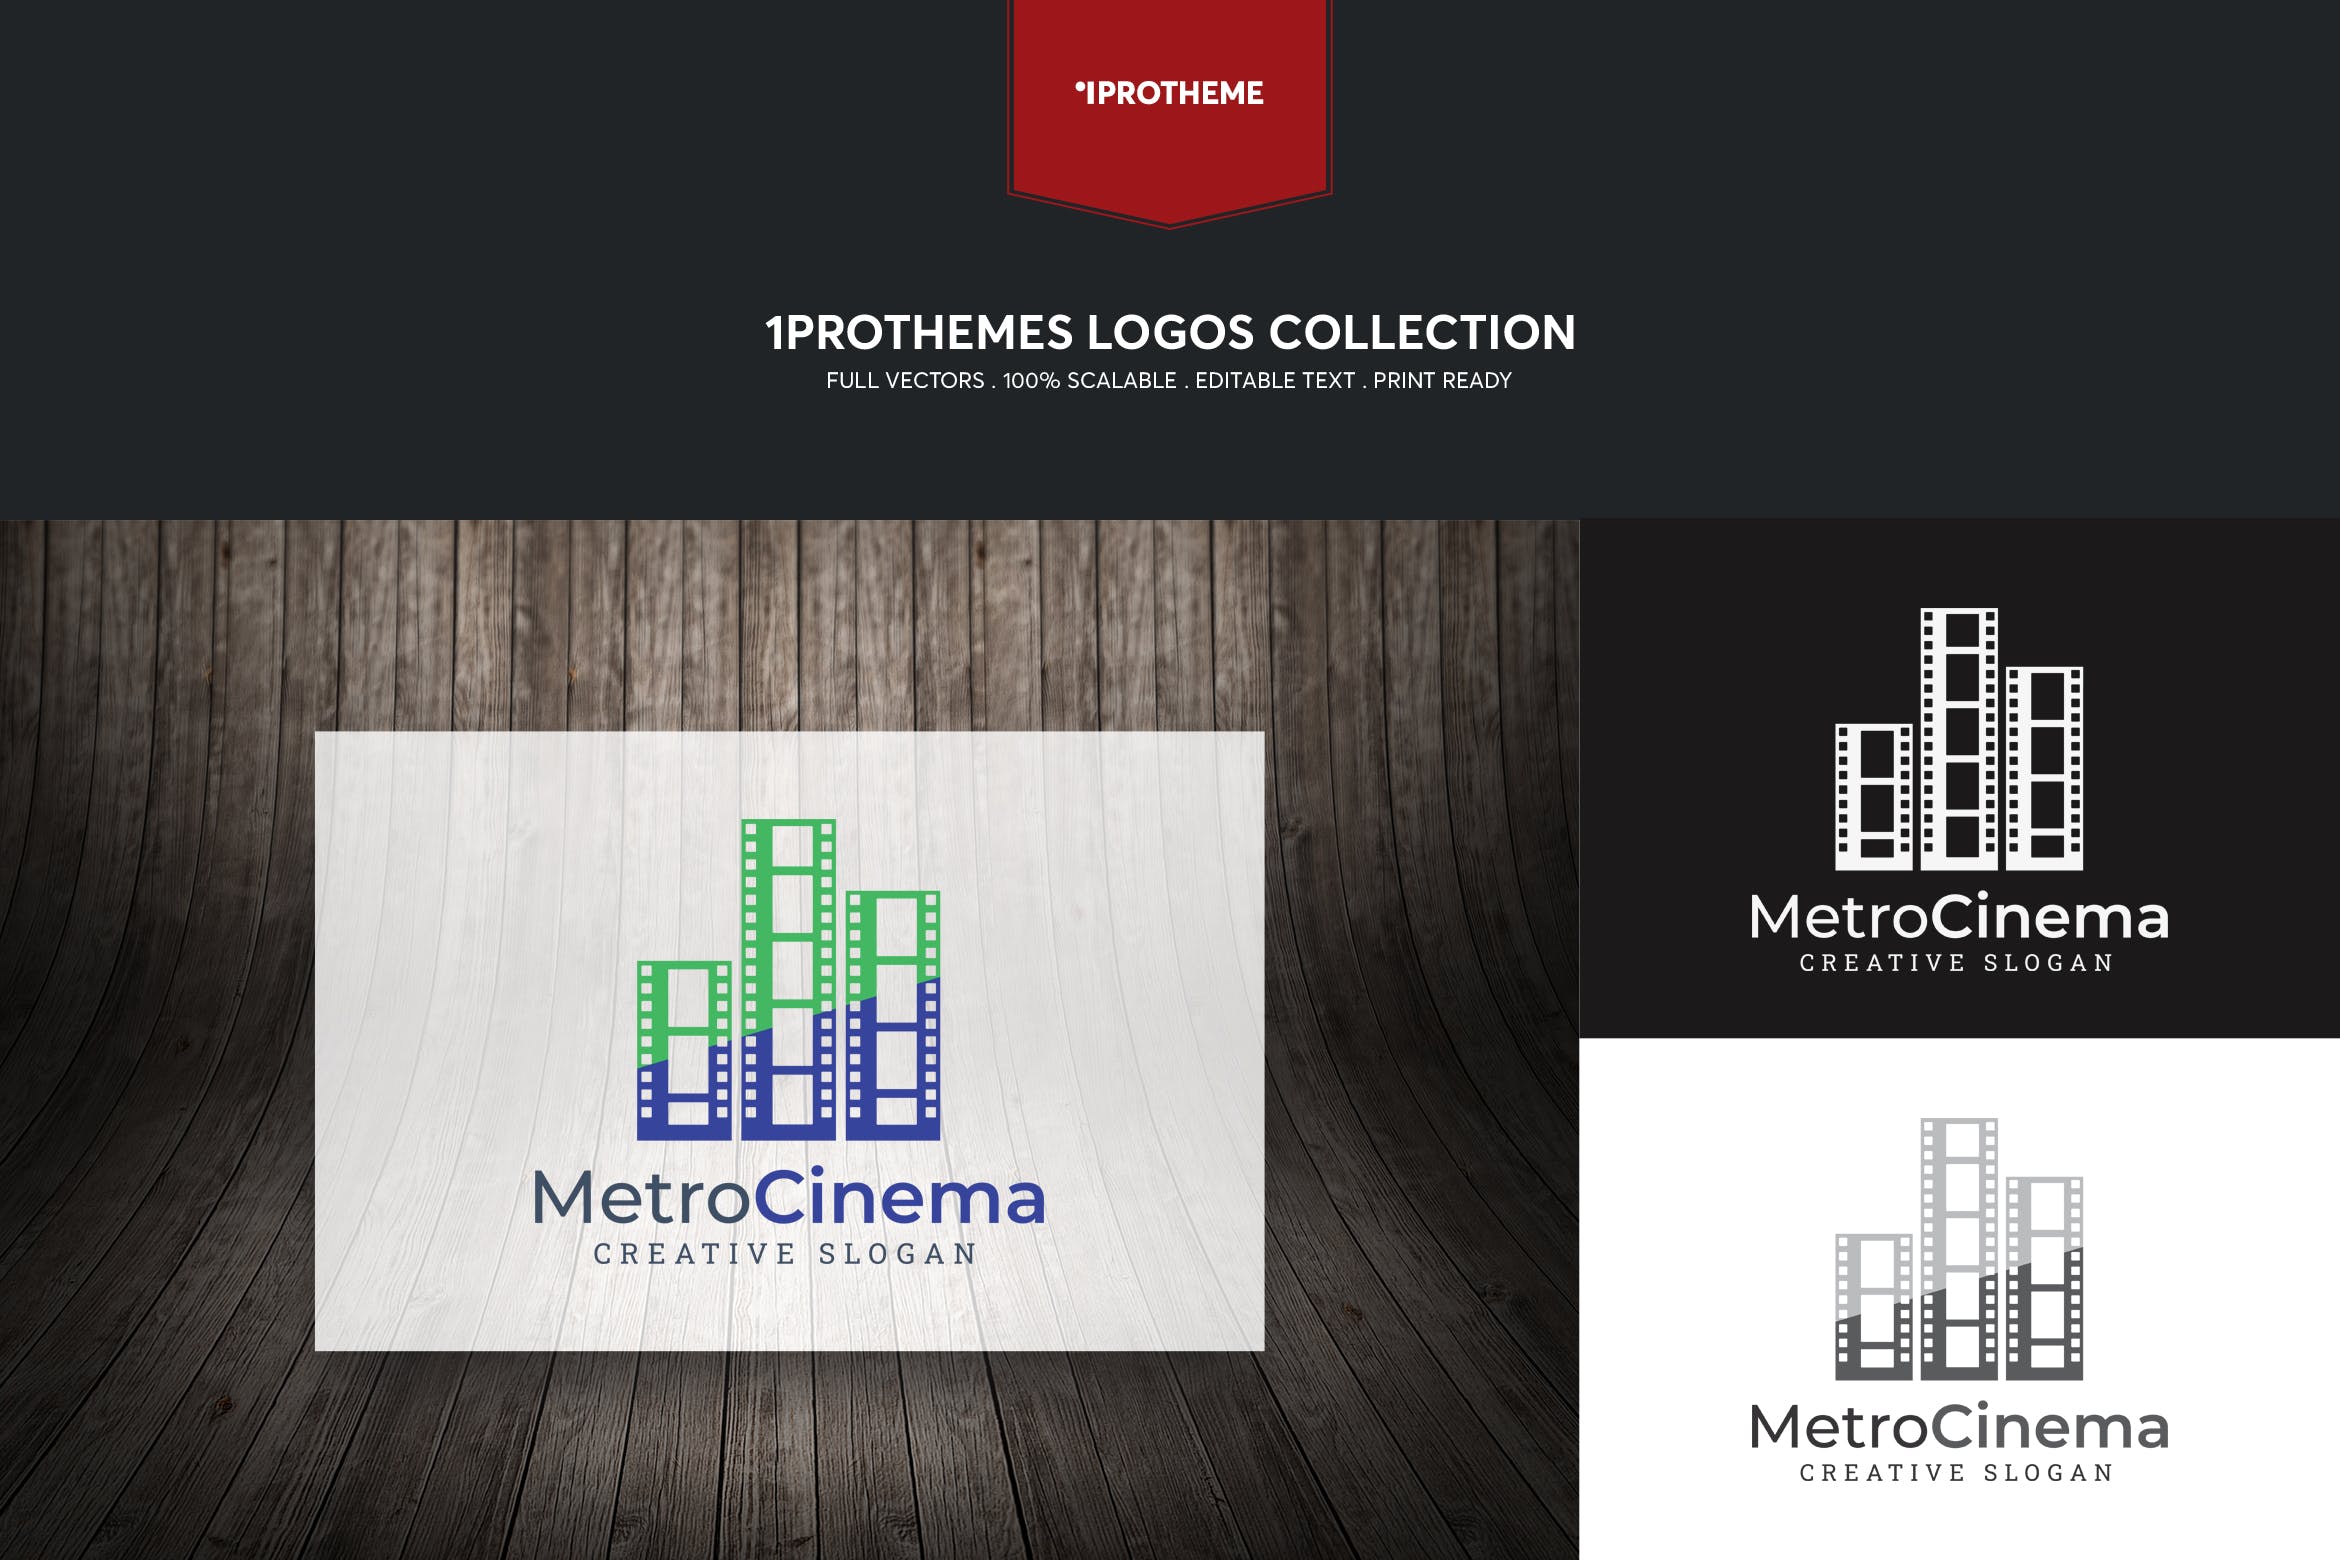 电影公司/影院品牌Logo设计素材库精选模板 Metro Cinema Logo Template插图